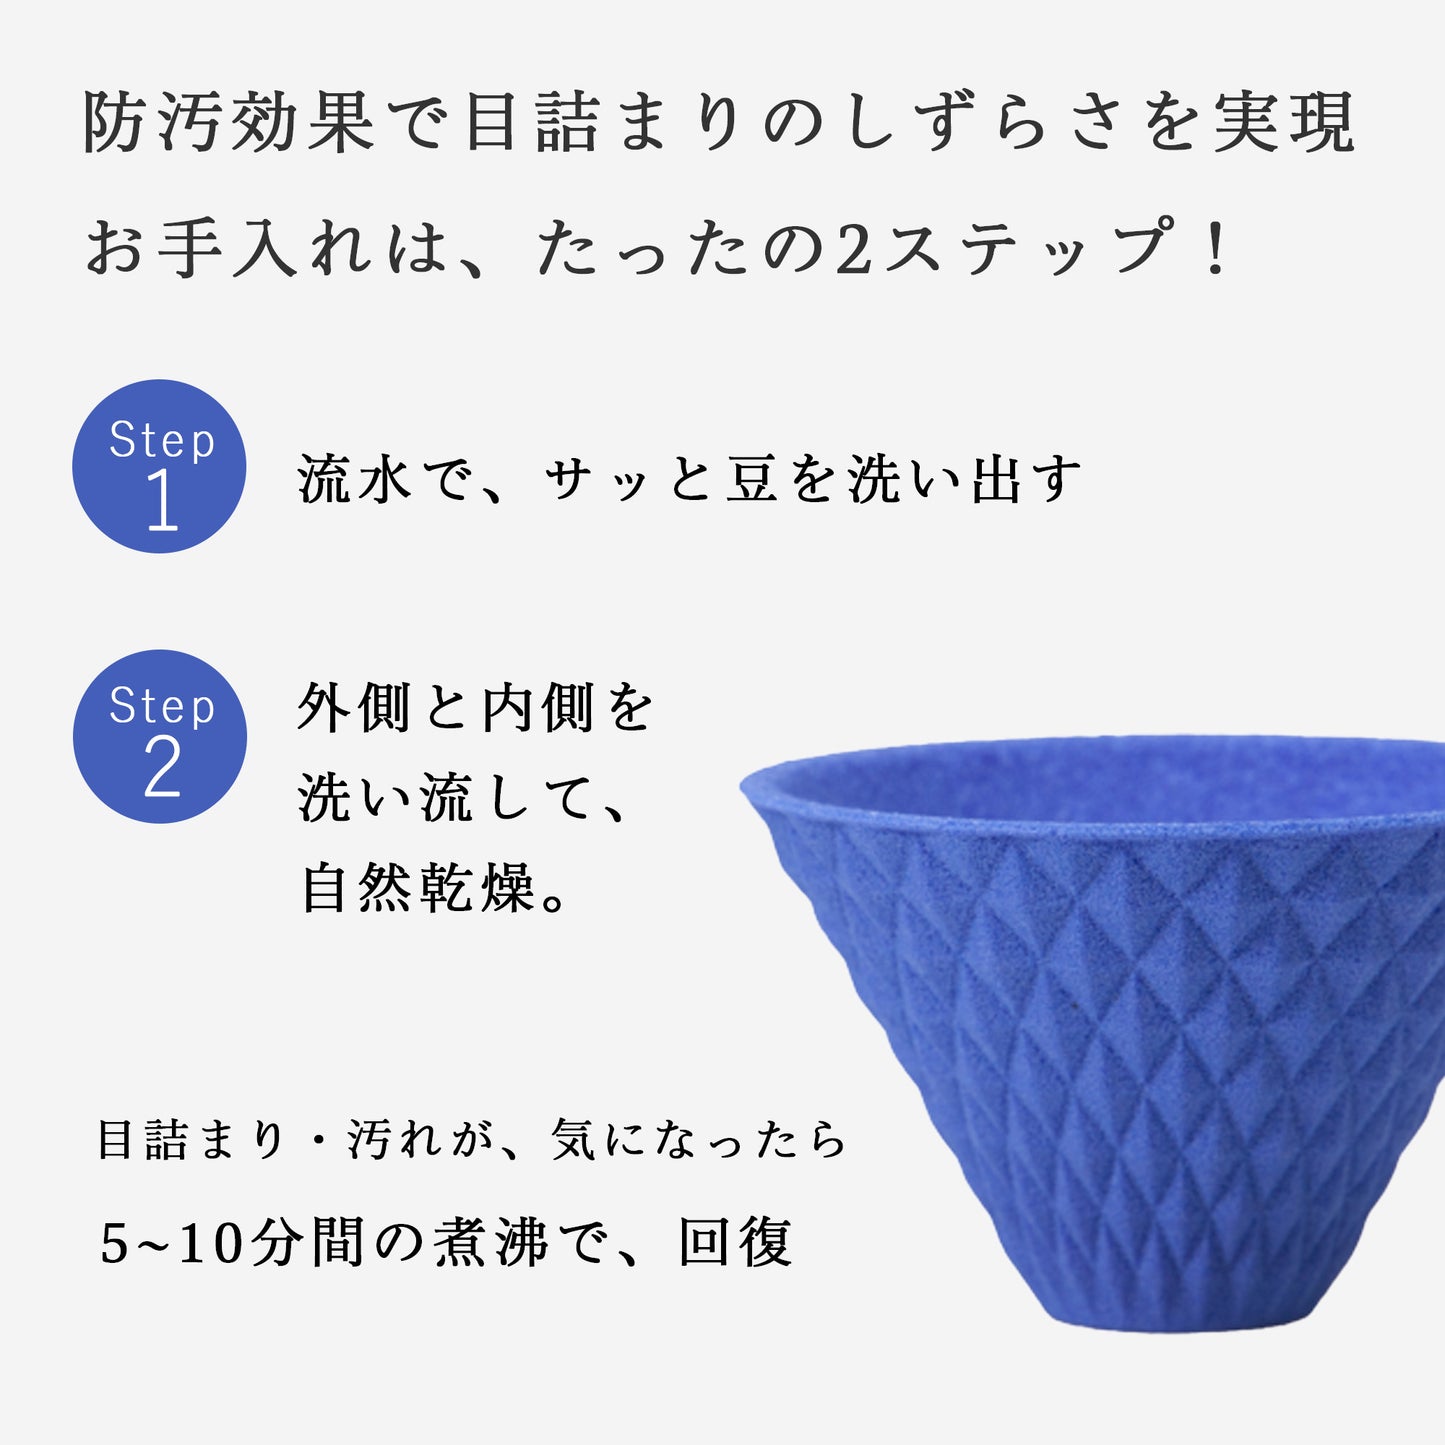 [波佐見焼] ekubo one drip セラミックコーヒーフィルター Ultramarine blue